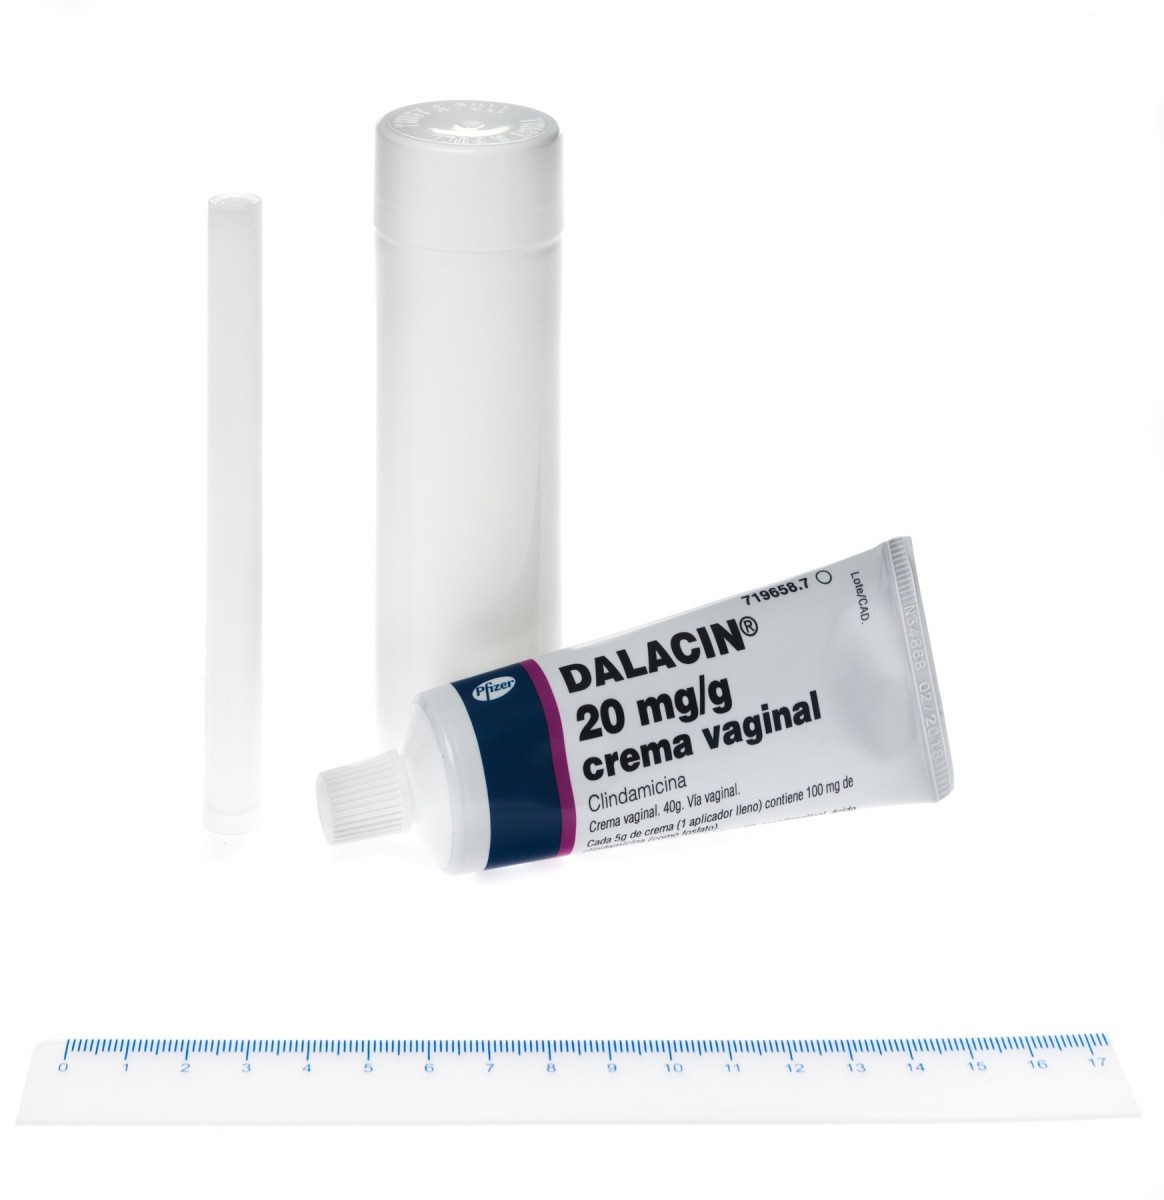 DALACIN 20 mg/g CREMA VAGINAL, 1 tubo de 40 g fotografía de la forma farmacéutica.